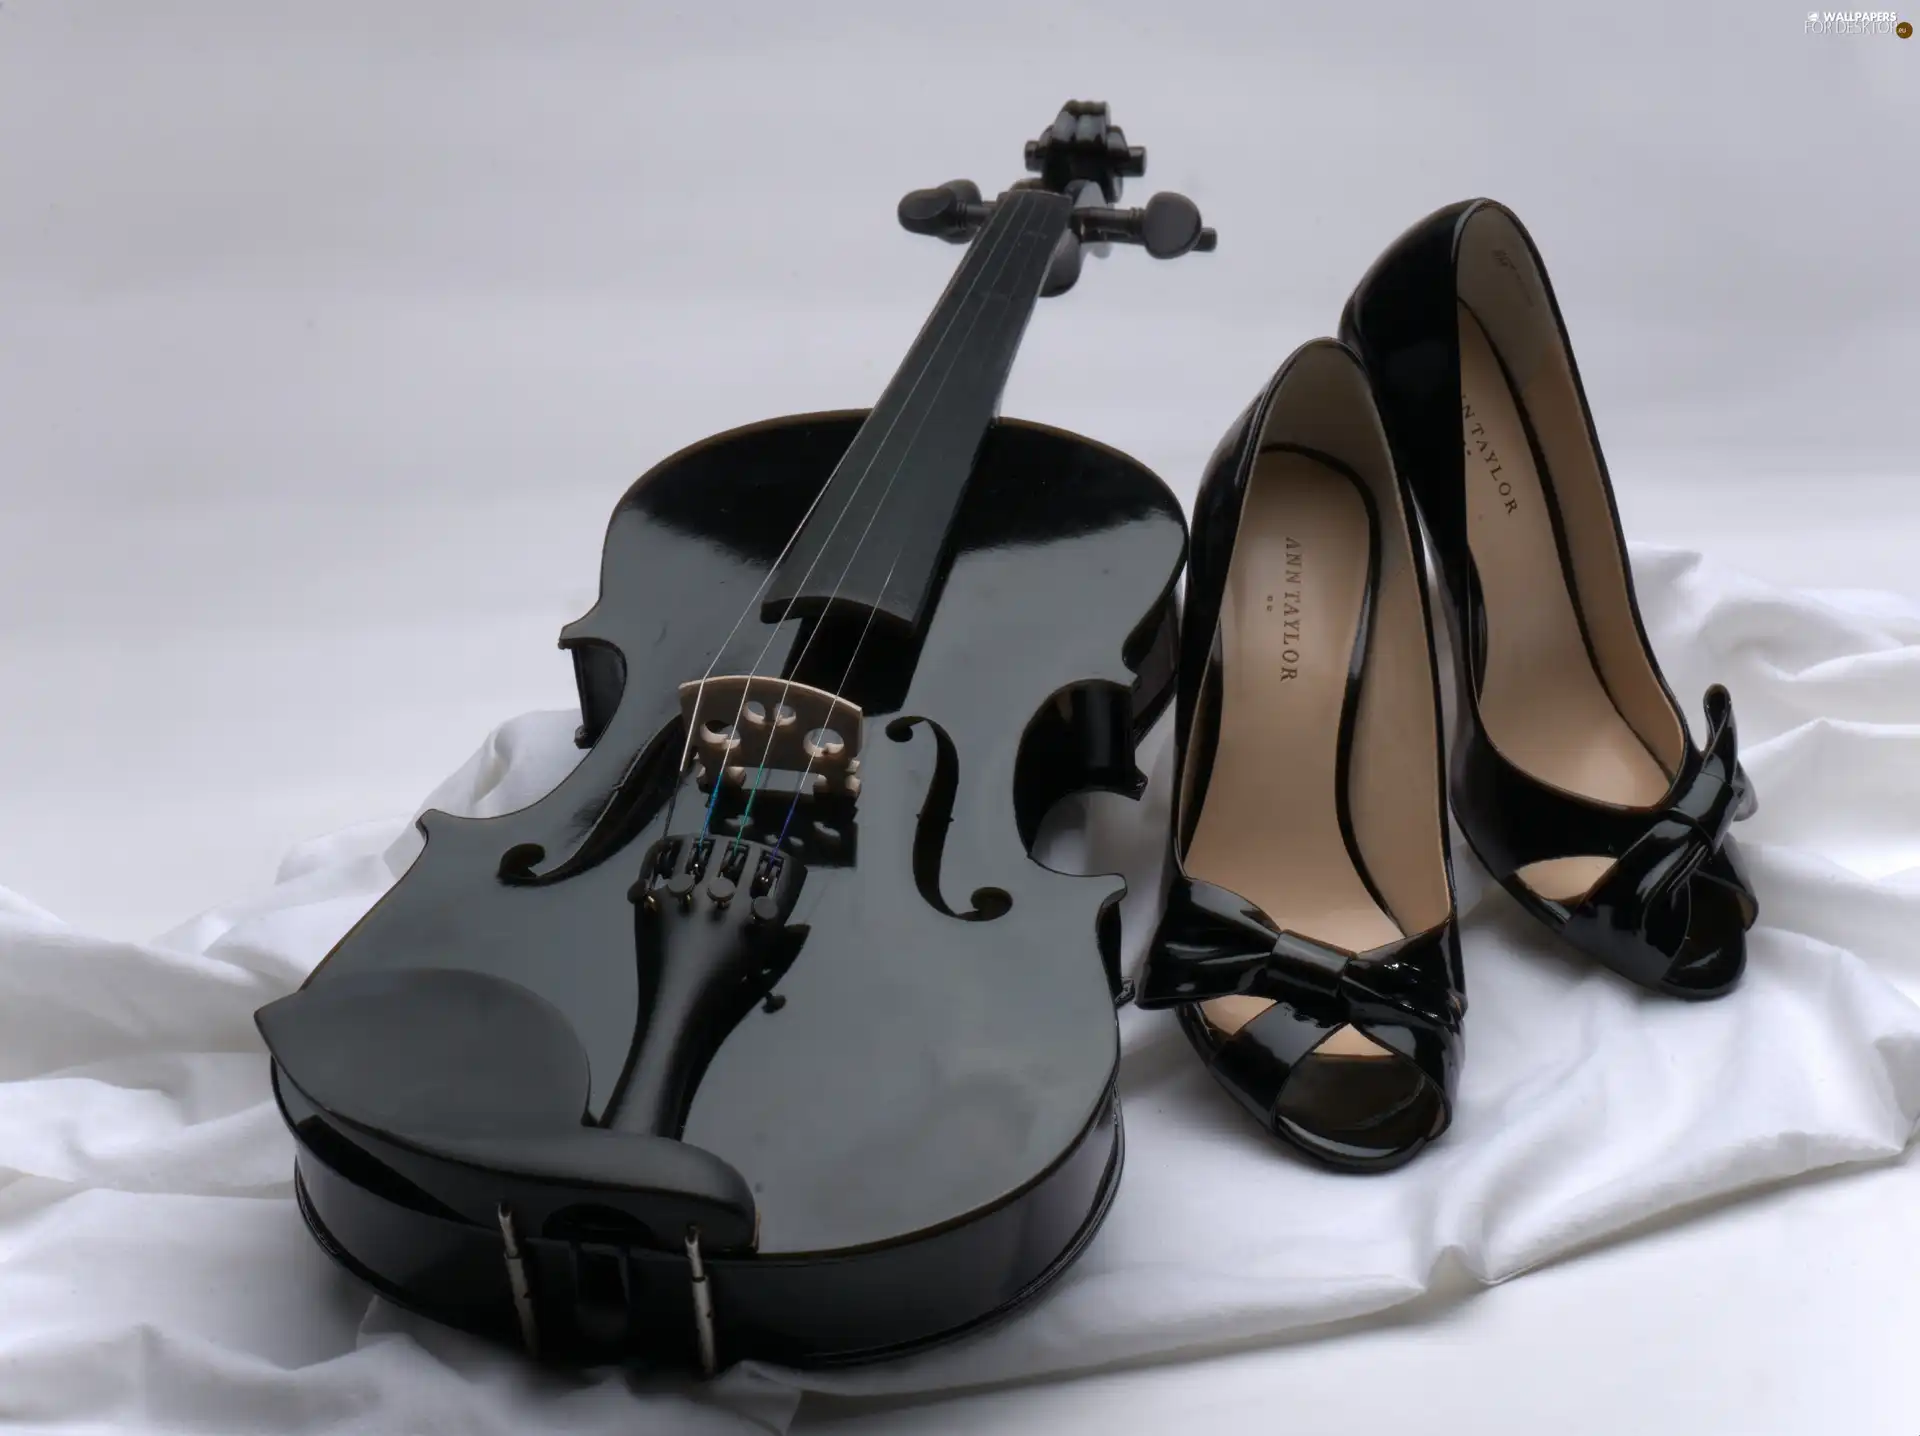 violin, stiletto boots